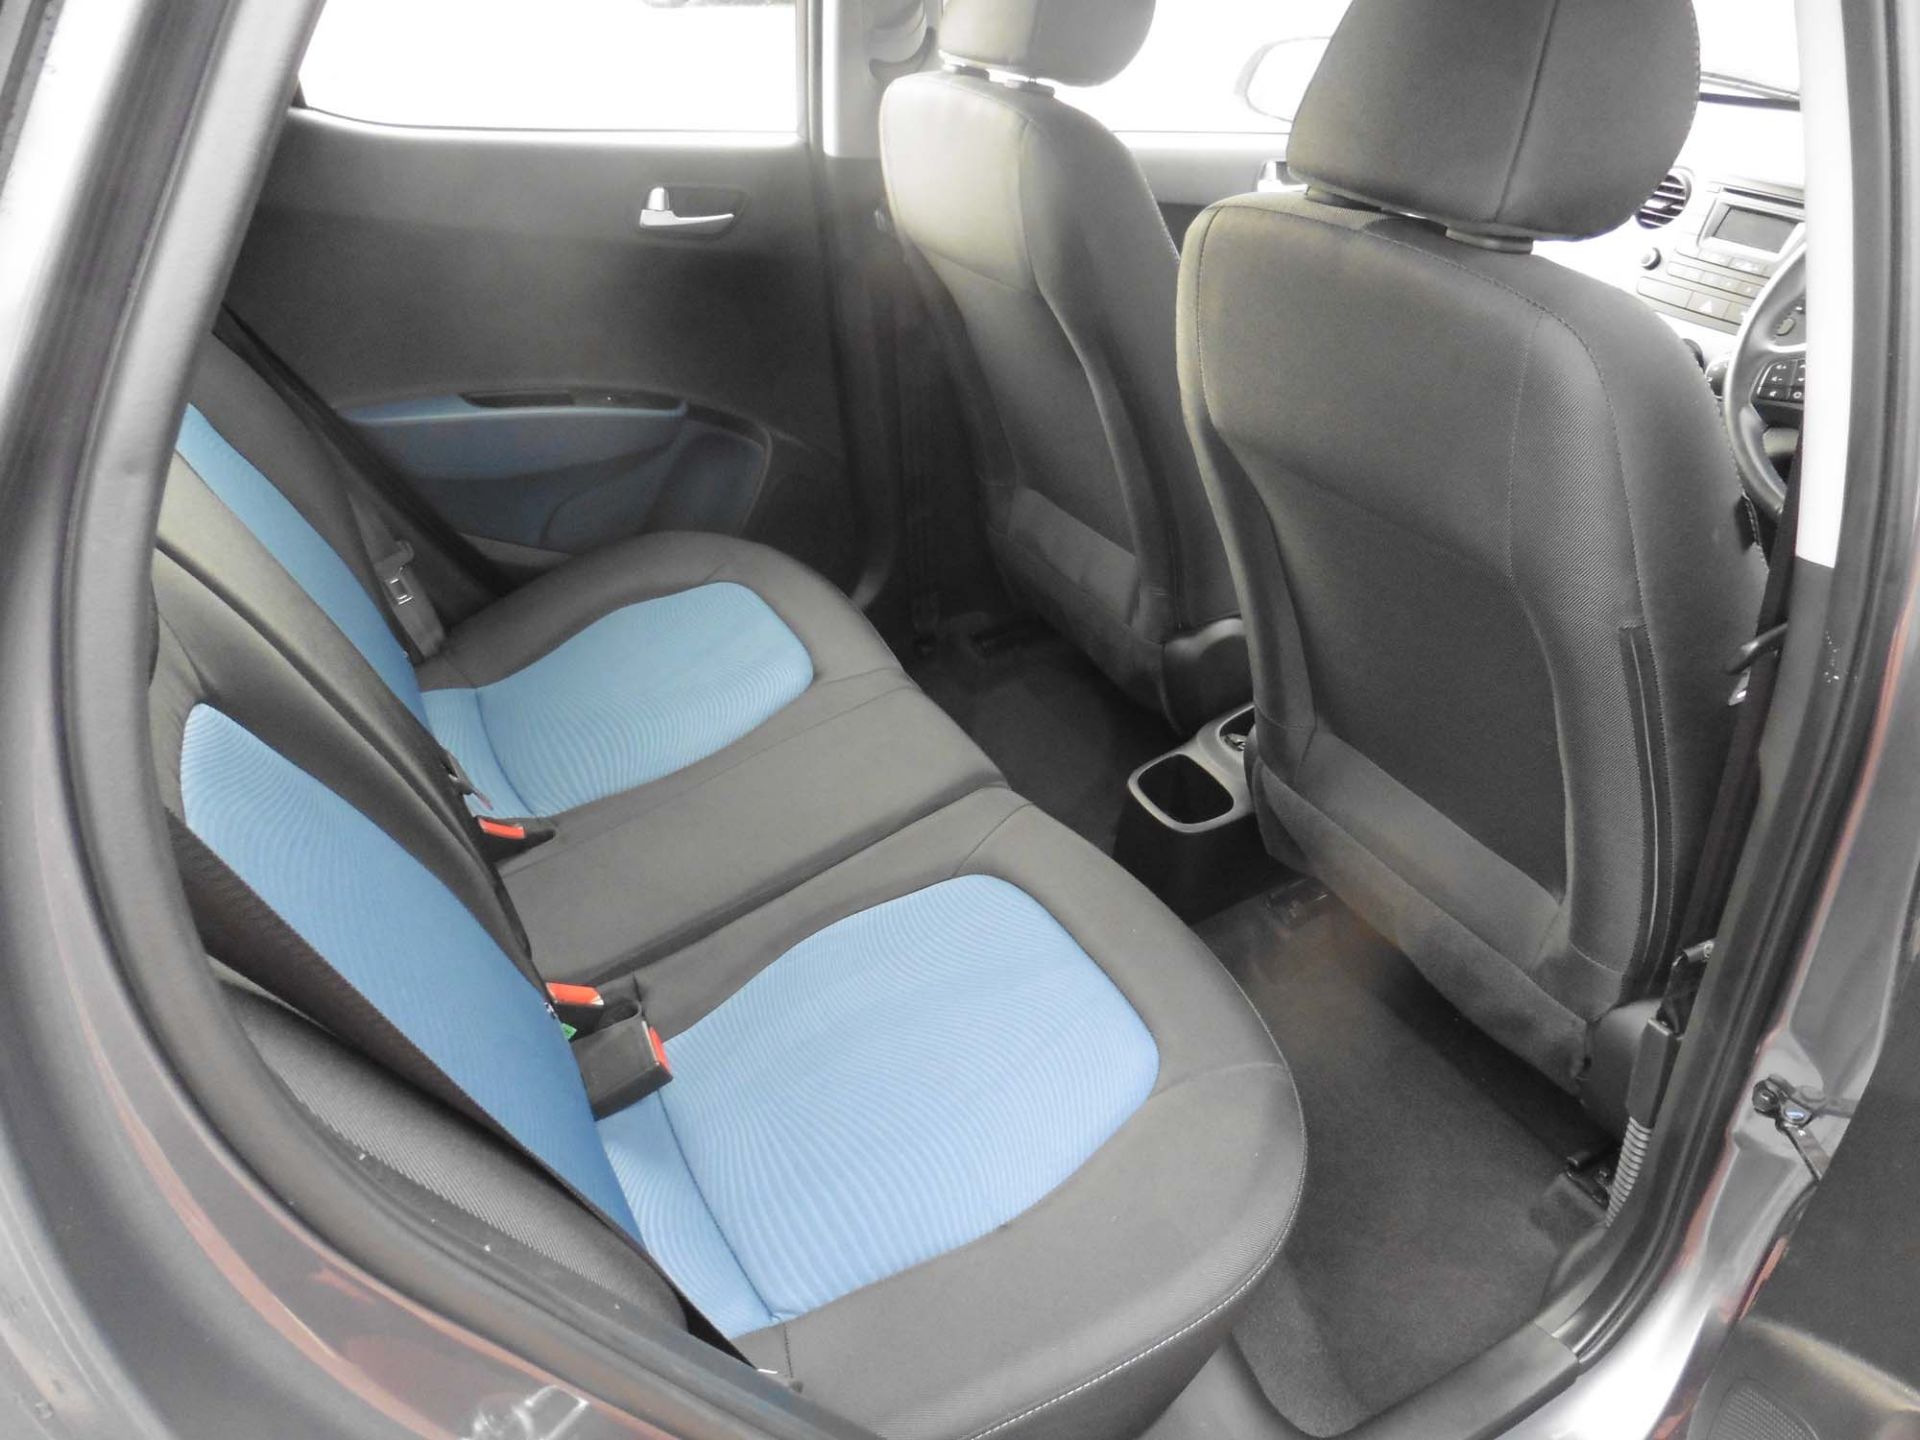 Hyundai i10 Premium 1248cc petrol hatchback Registration number: EF66 URB First Registered: 29.11. - Image 8 of 9